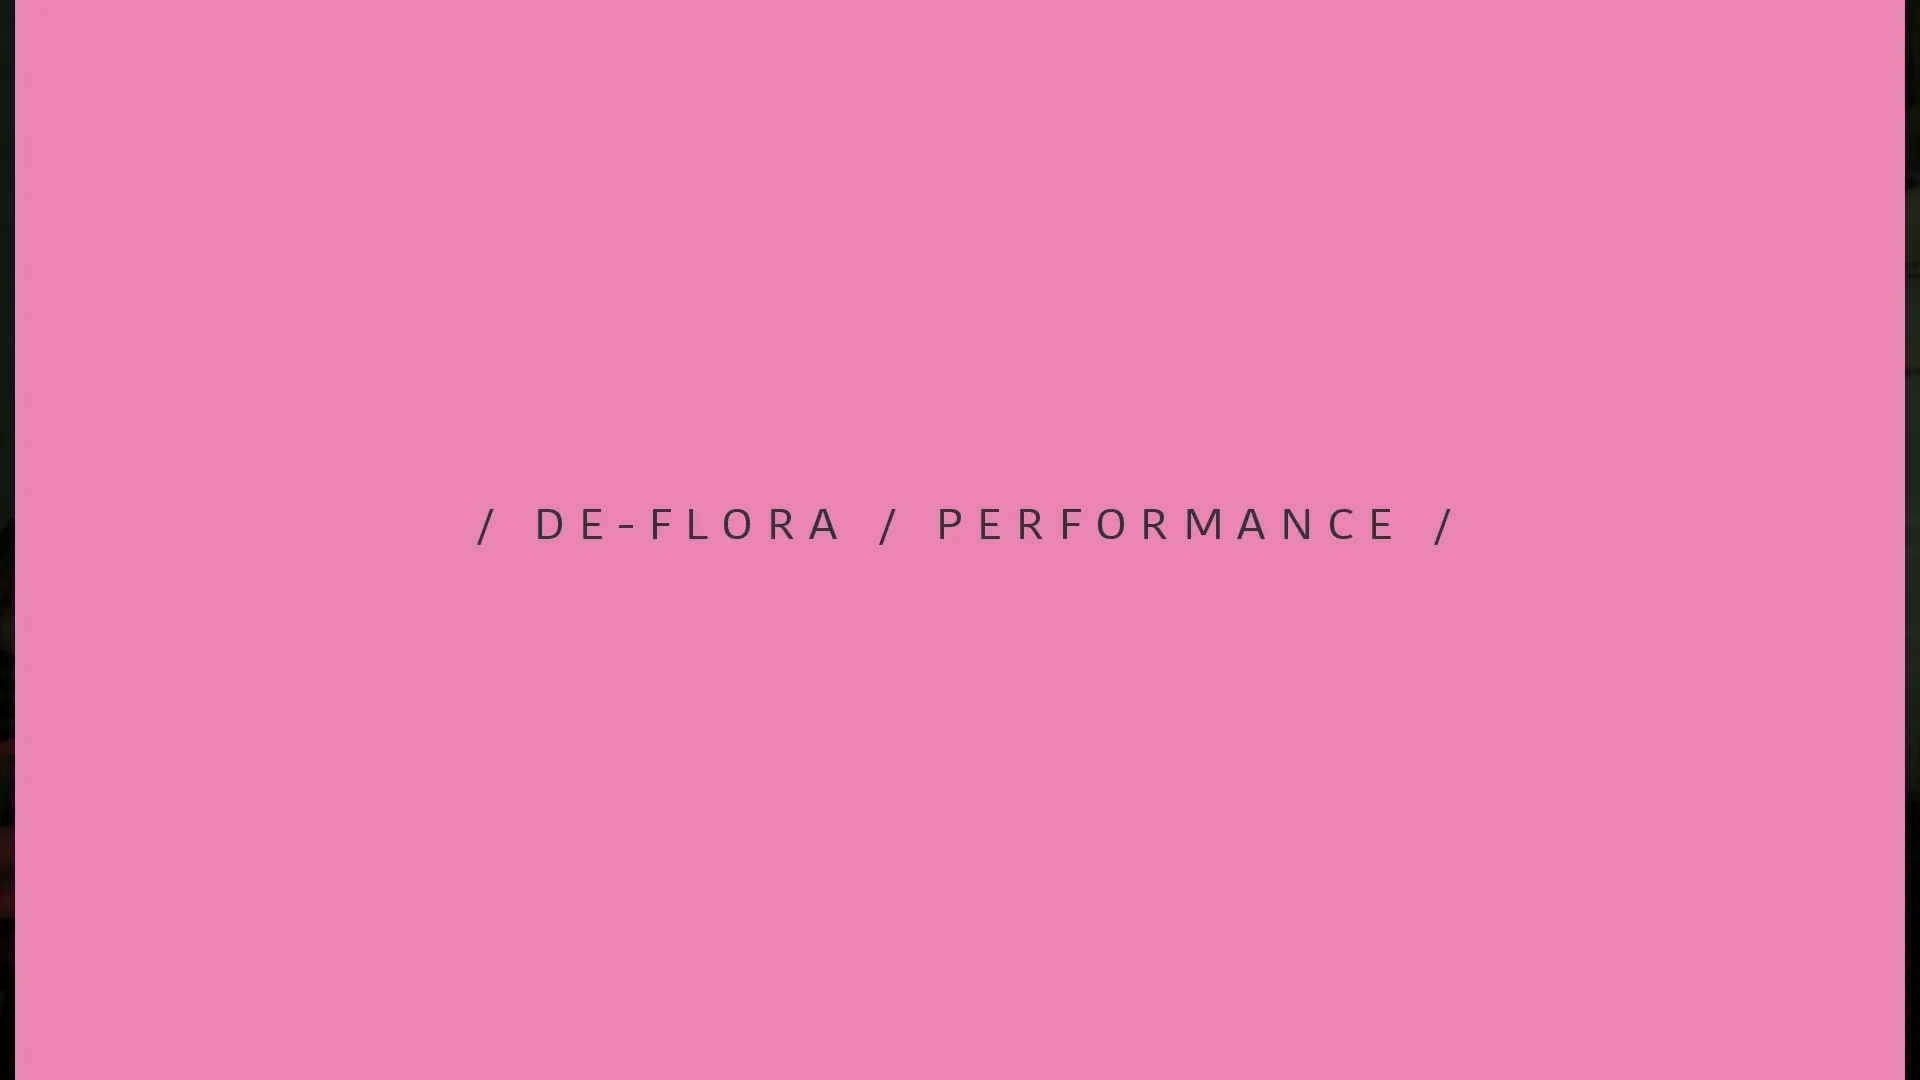 De-flora / Performance / Vrogini  